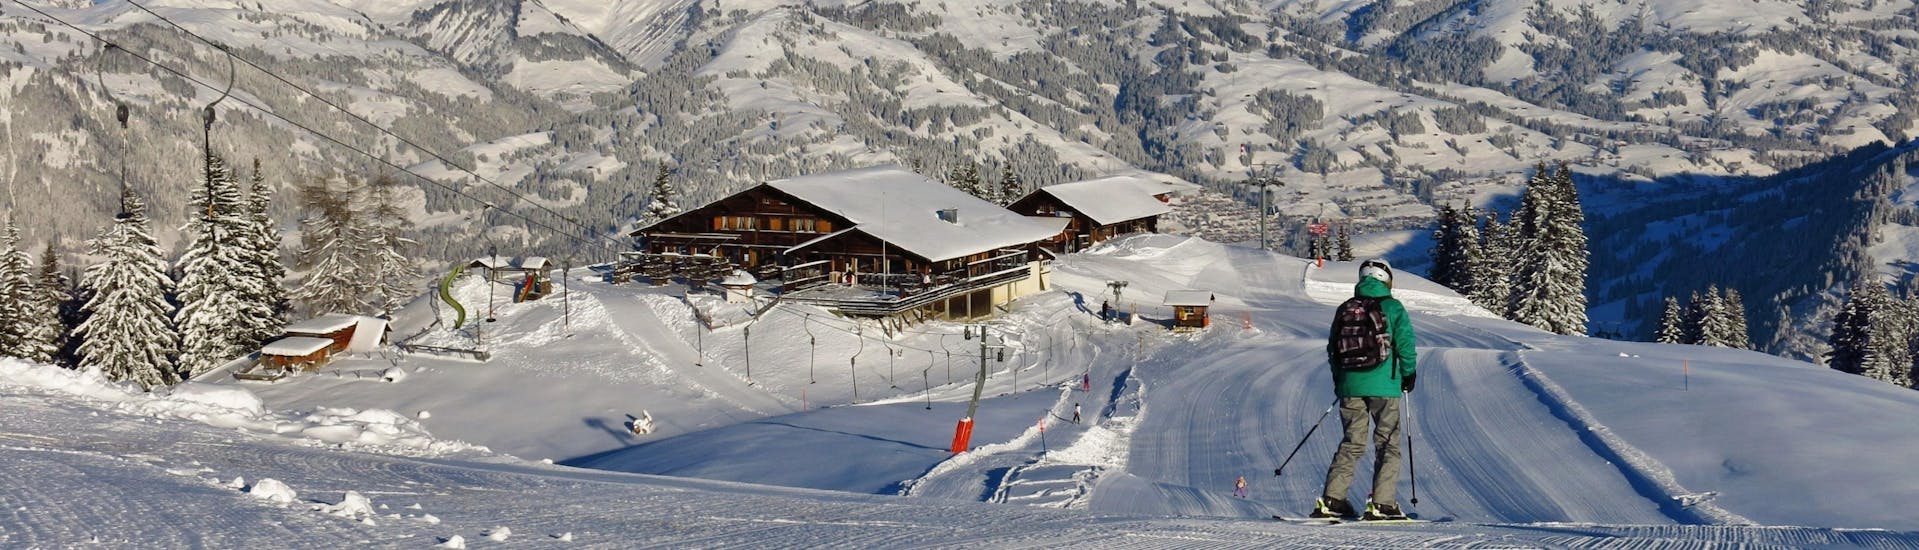 Ausblick auf die sonnige Berglandschaft beim Skifahren lernen mit den Skischulen in Gstaad-Saanen.